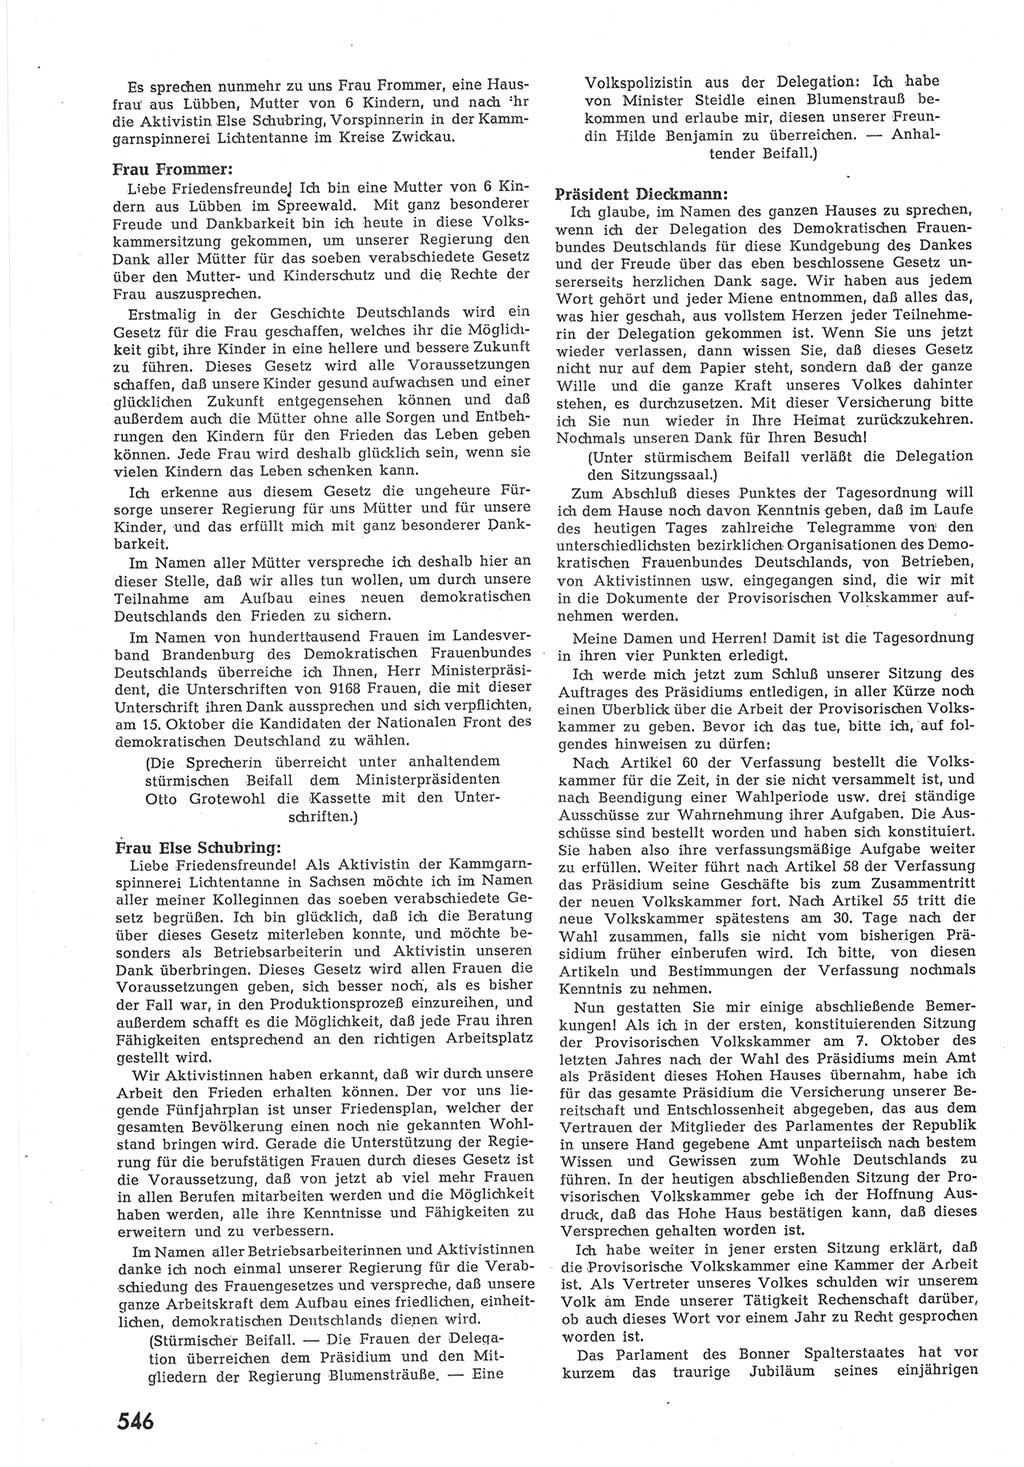 Provisorische Volkskammer (VK) der Deutschen Demokratischen Republik (DDR) 1949-1950, Dokument 564 (Prov. VK DDR 1949-1950, Dok. 564)